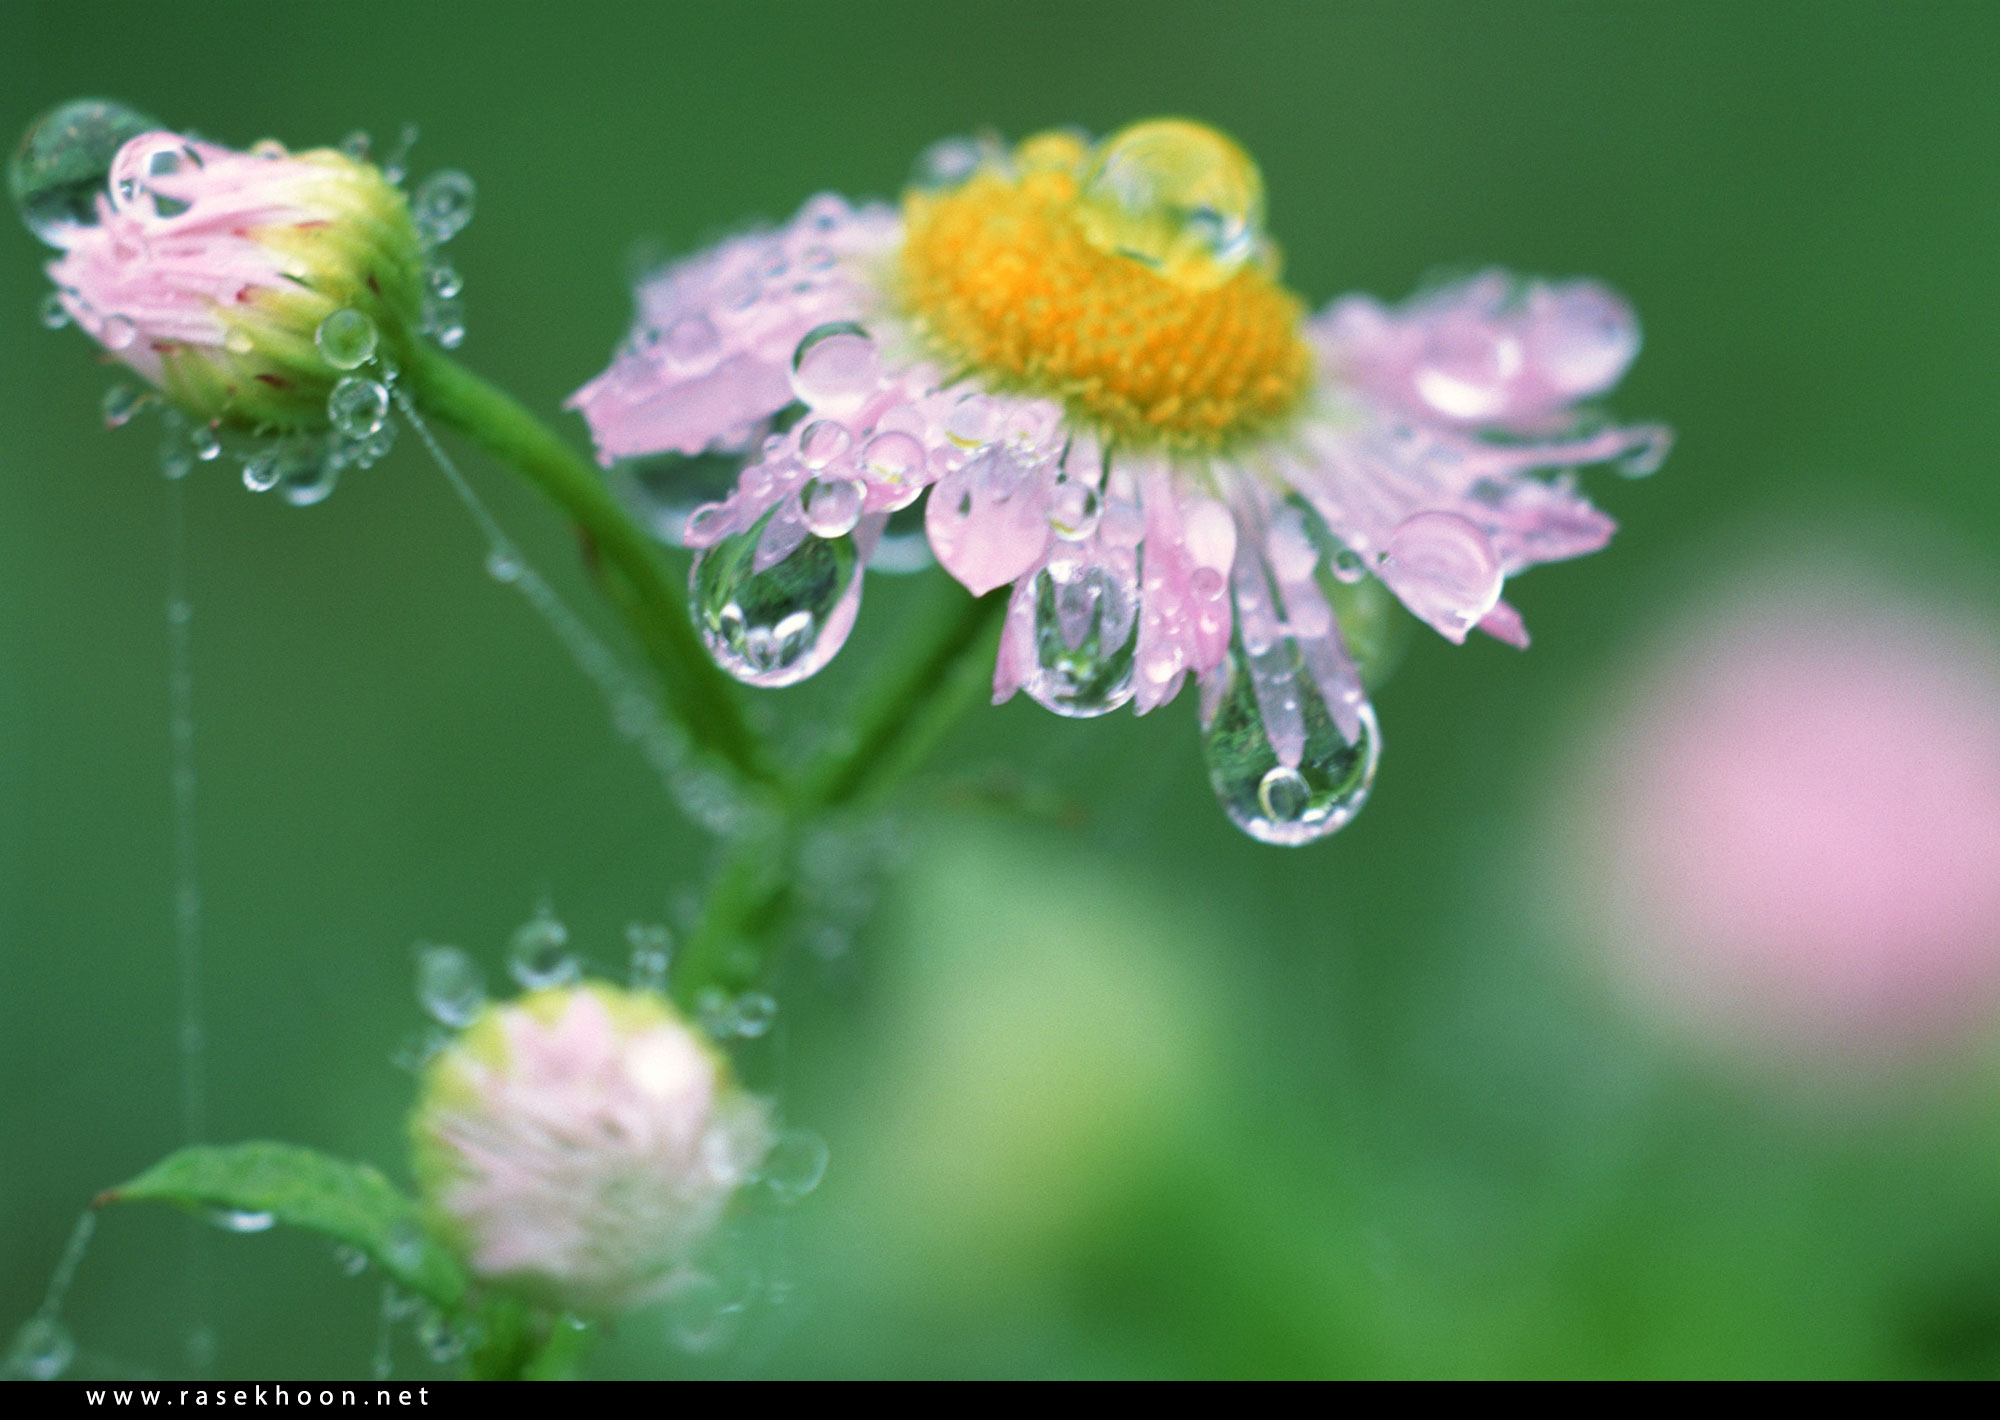 День утренней росы. Утренняя роса на цветах. Цветы с капельками росы. Роса на цветах после дождя. Полевые цветы после дождя.